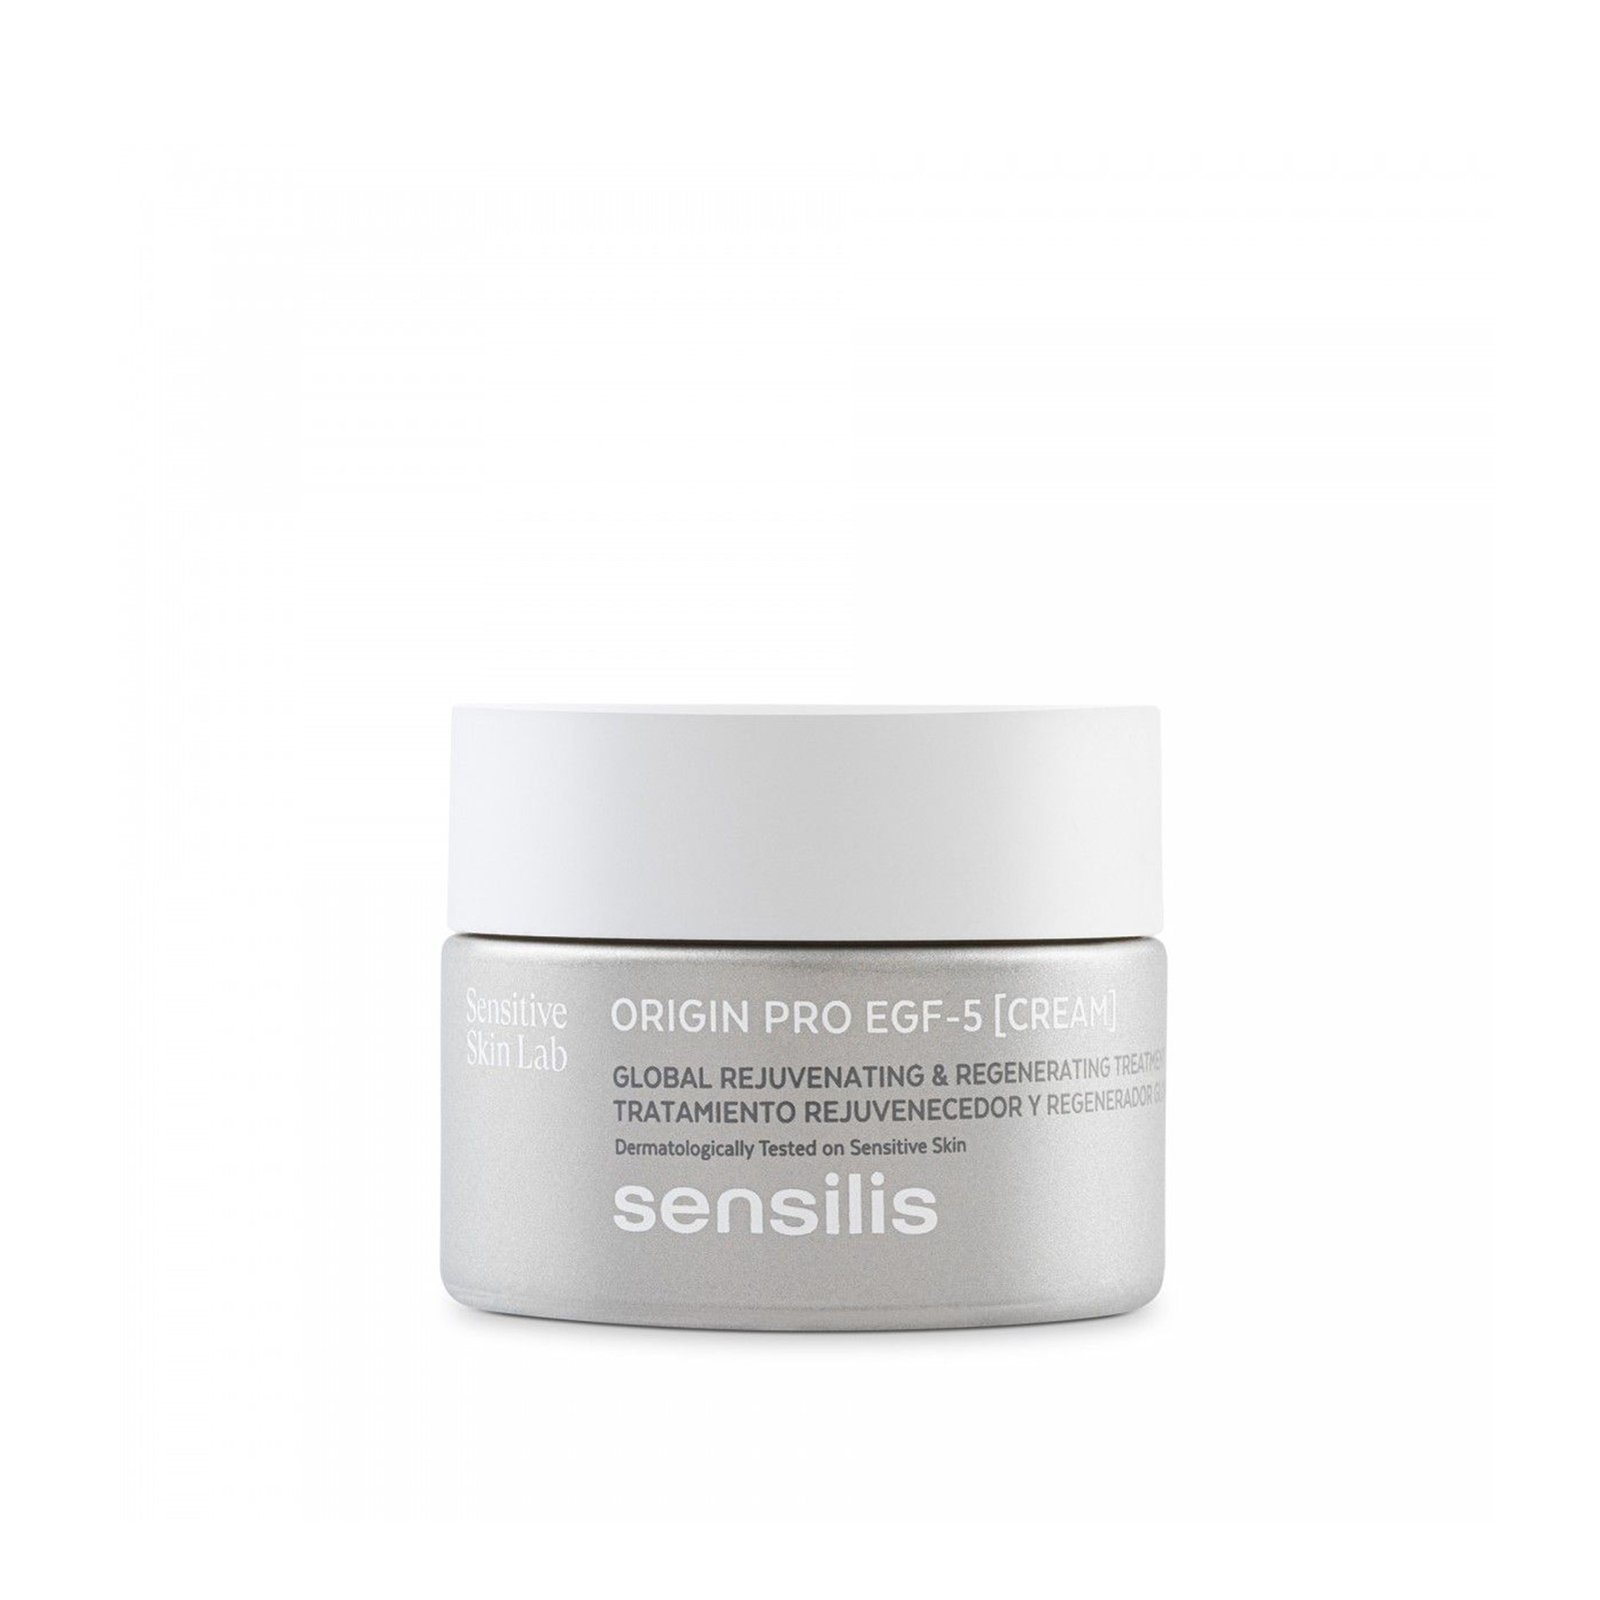 Sensilis Origin Pro EGF-5 [Cream] Global Rejuvenating & Regenerating Treatment 50ml